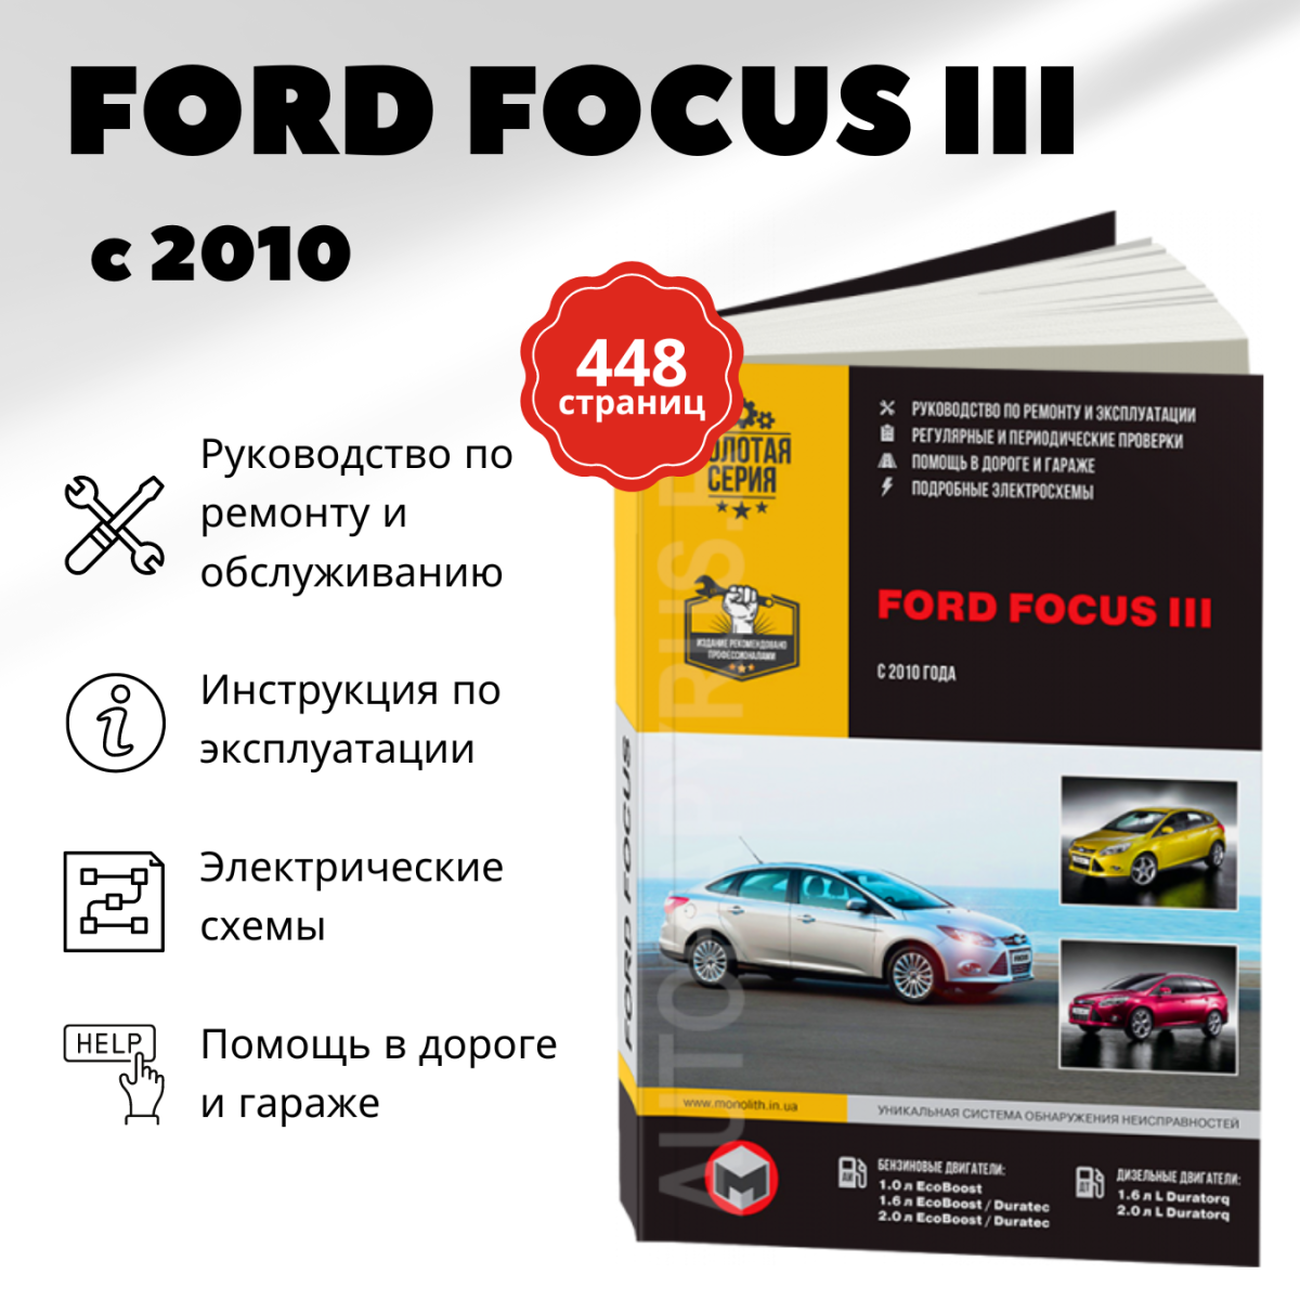 Автокнига: руководство / инструкция по ремонту и эксплуатации FORD FOCUS 3 (форд фокус 3) бензин / дизель с 2010 года выпуска, 978-617-537-153-4, издательство Монолит